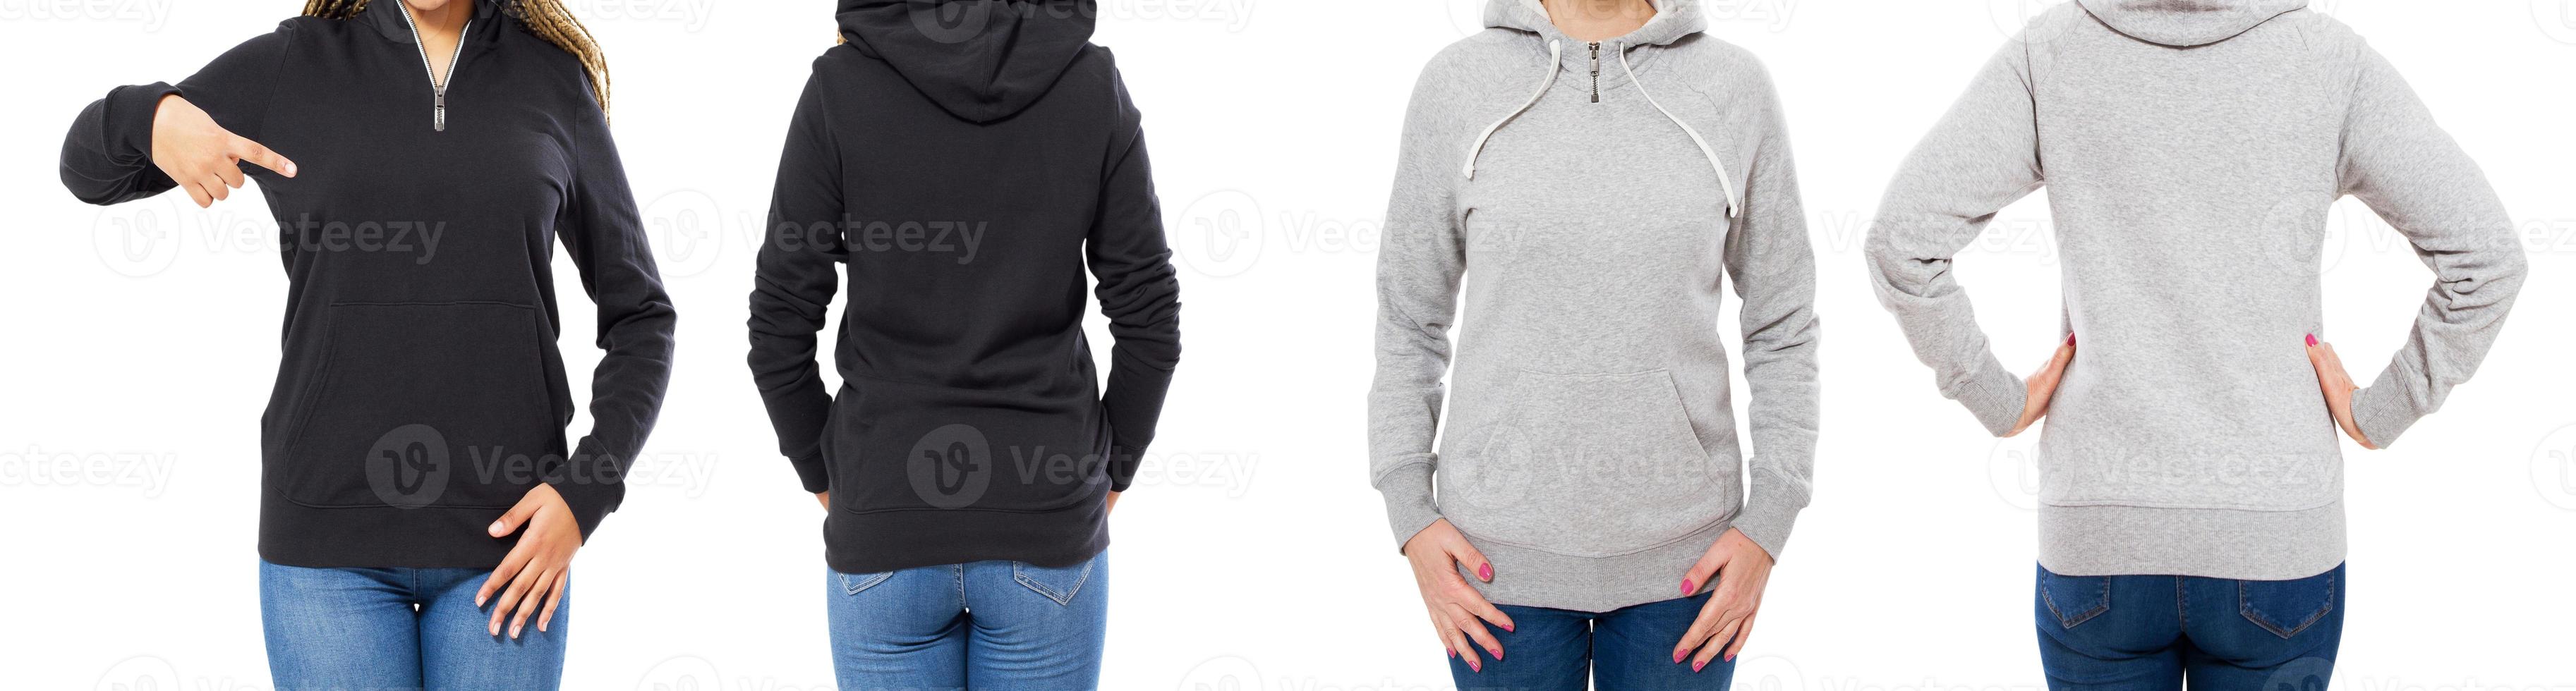 uppsättning av kvinnlig hoodie mock up isolerade över vit bakgrund foto